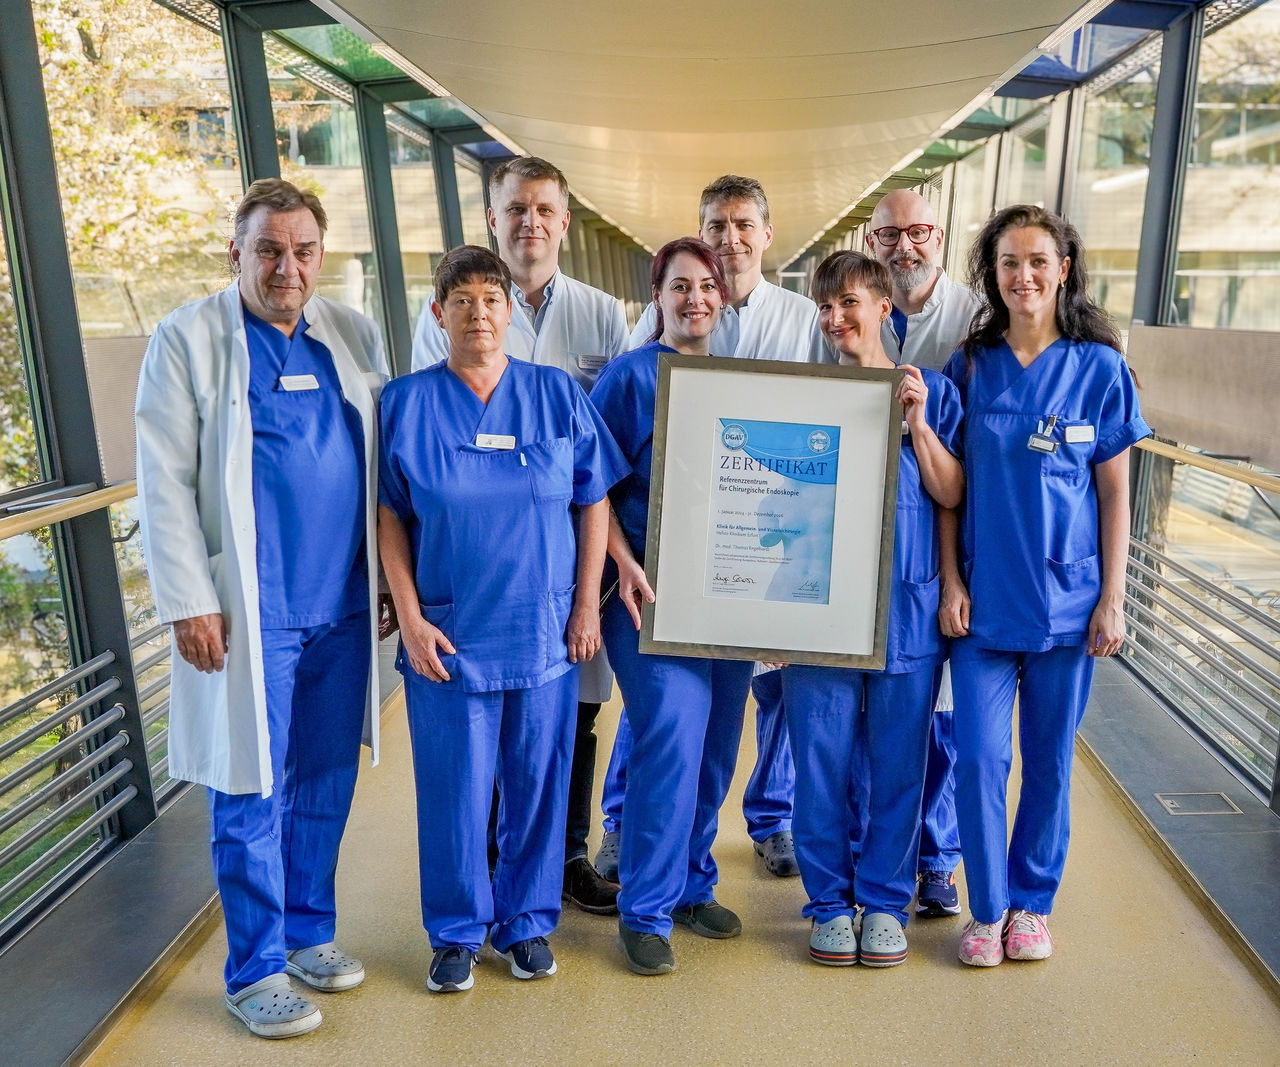 Allgemein- und Viszeralchirurgie als Referenzzentrum für Chirurgische Endoskopie ausgezeichnet